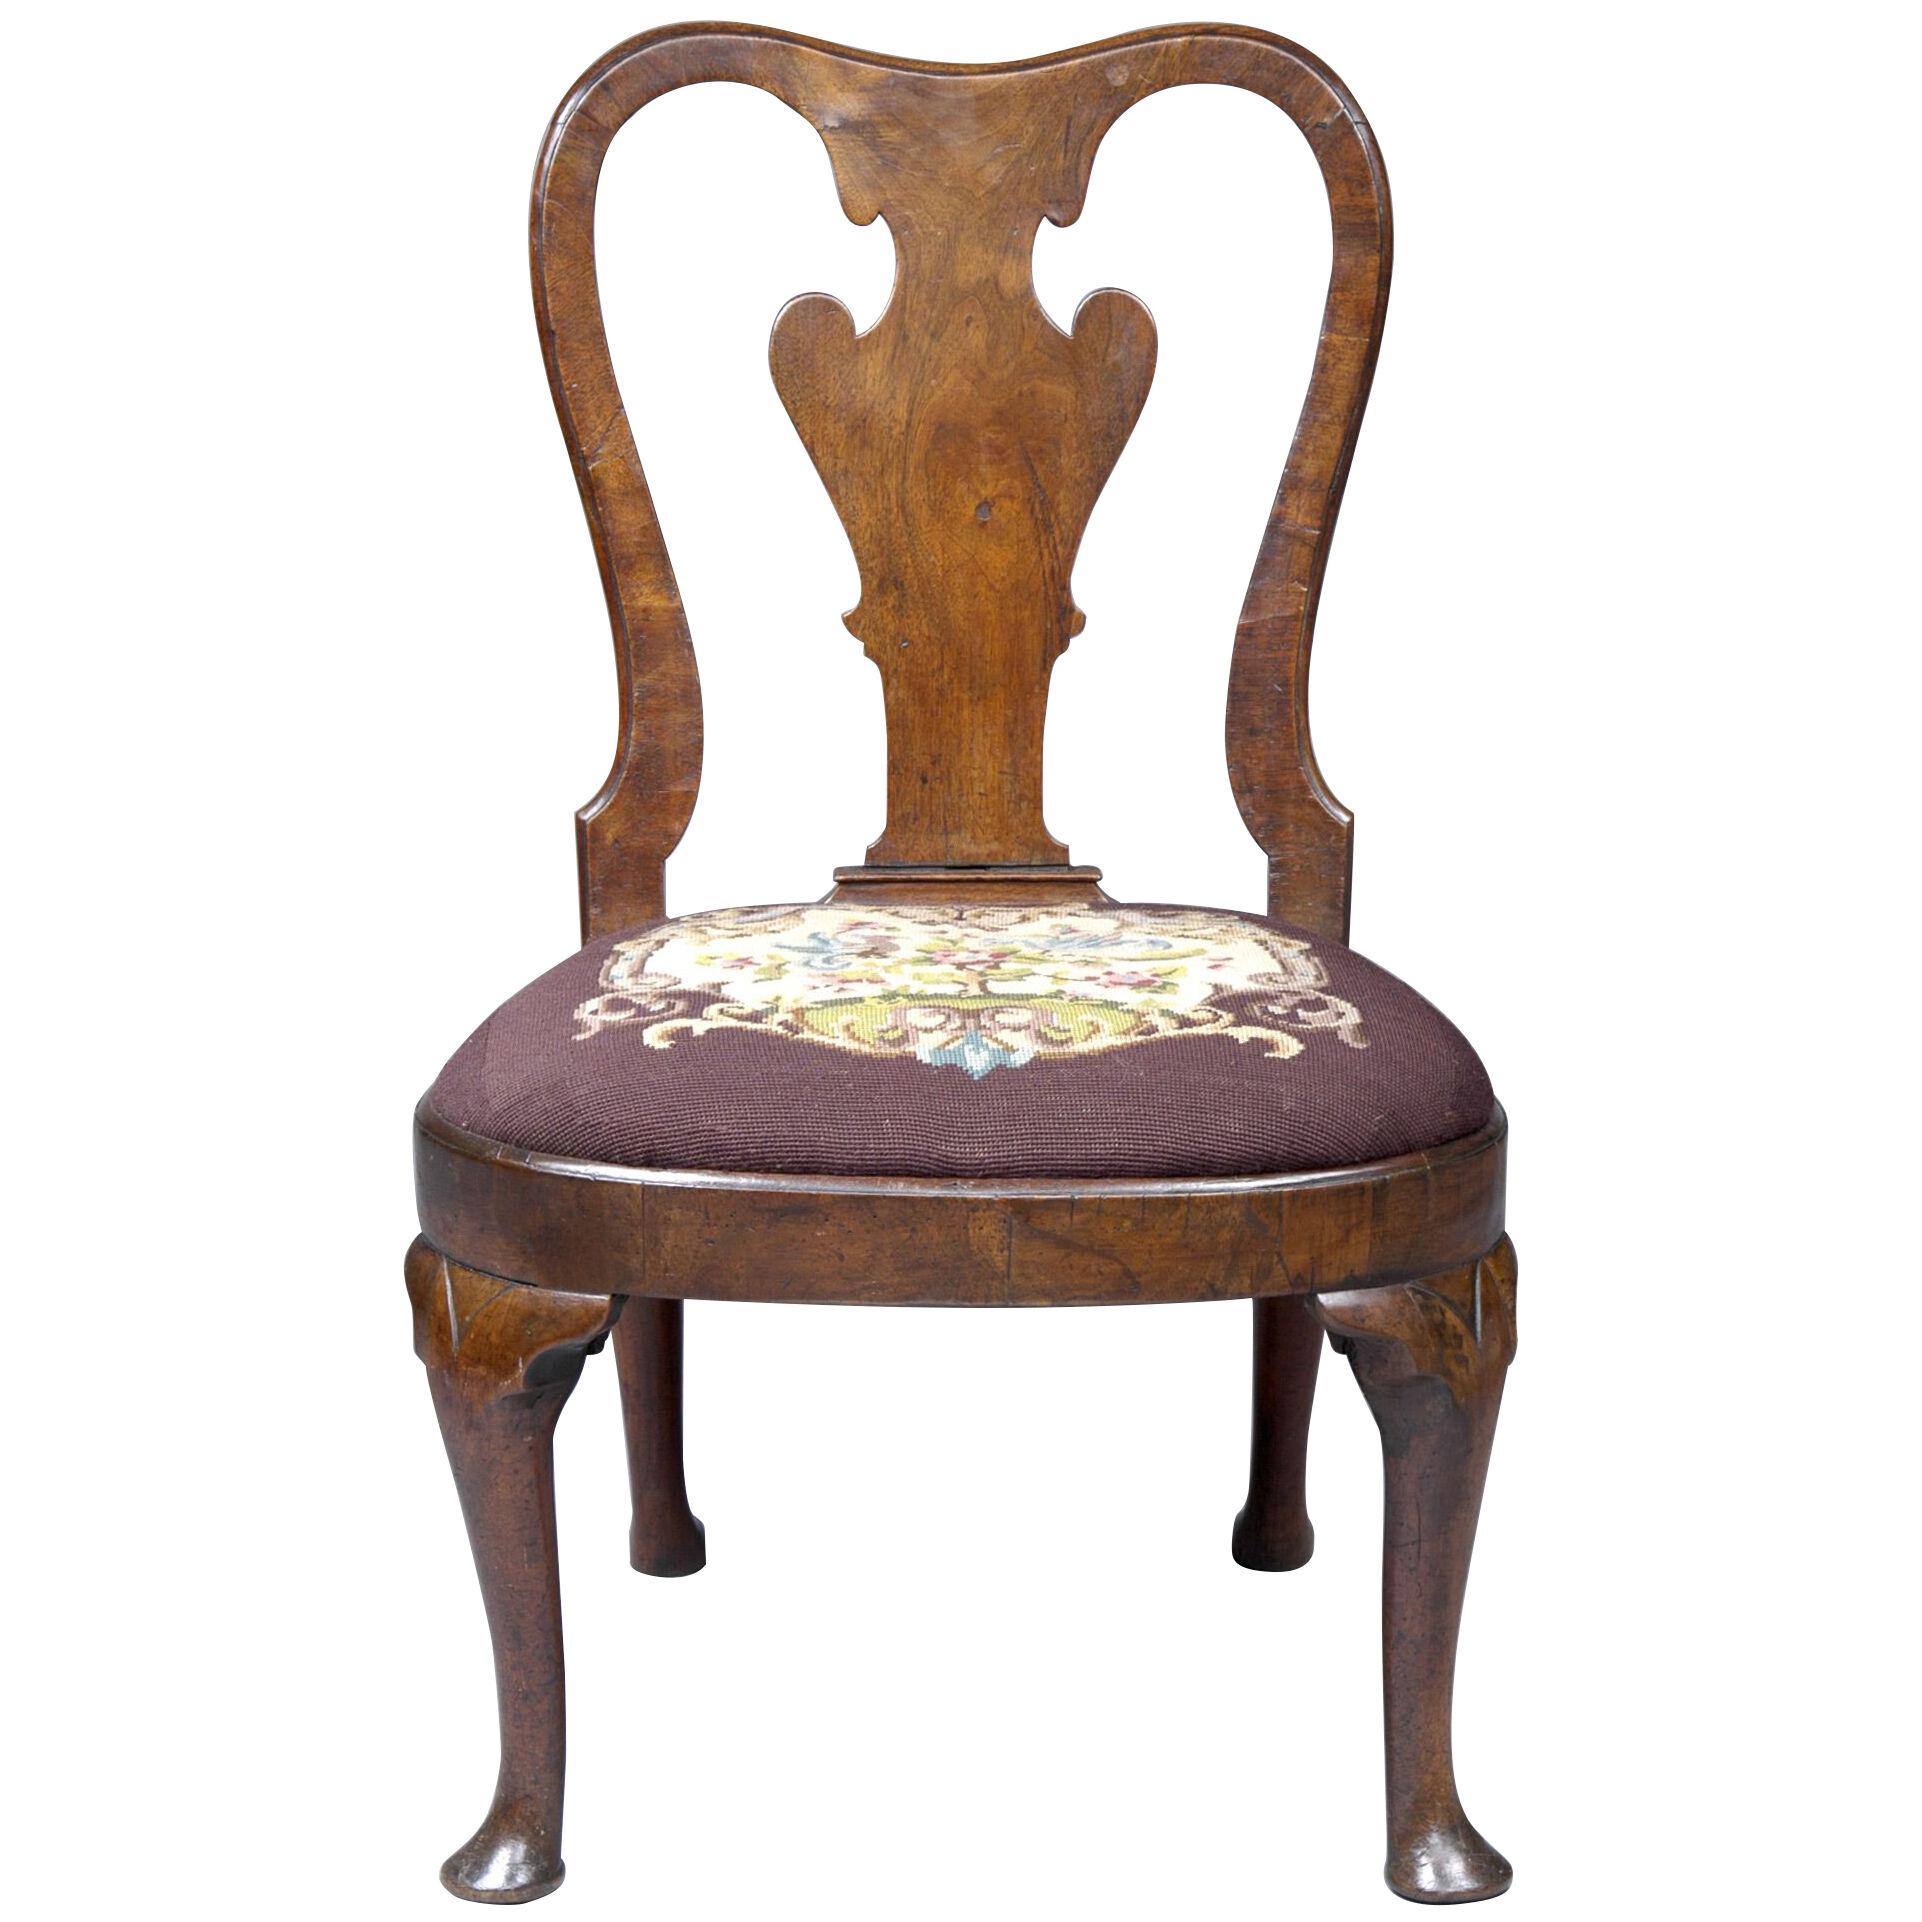  Queen Anne  Period Walnut Side Chair